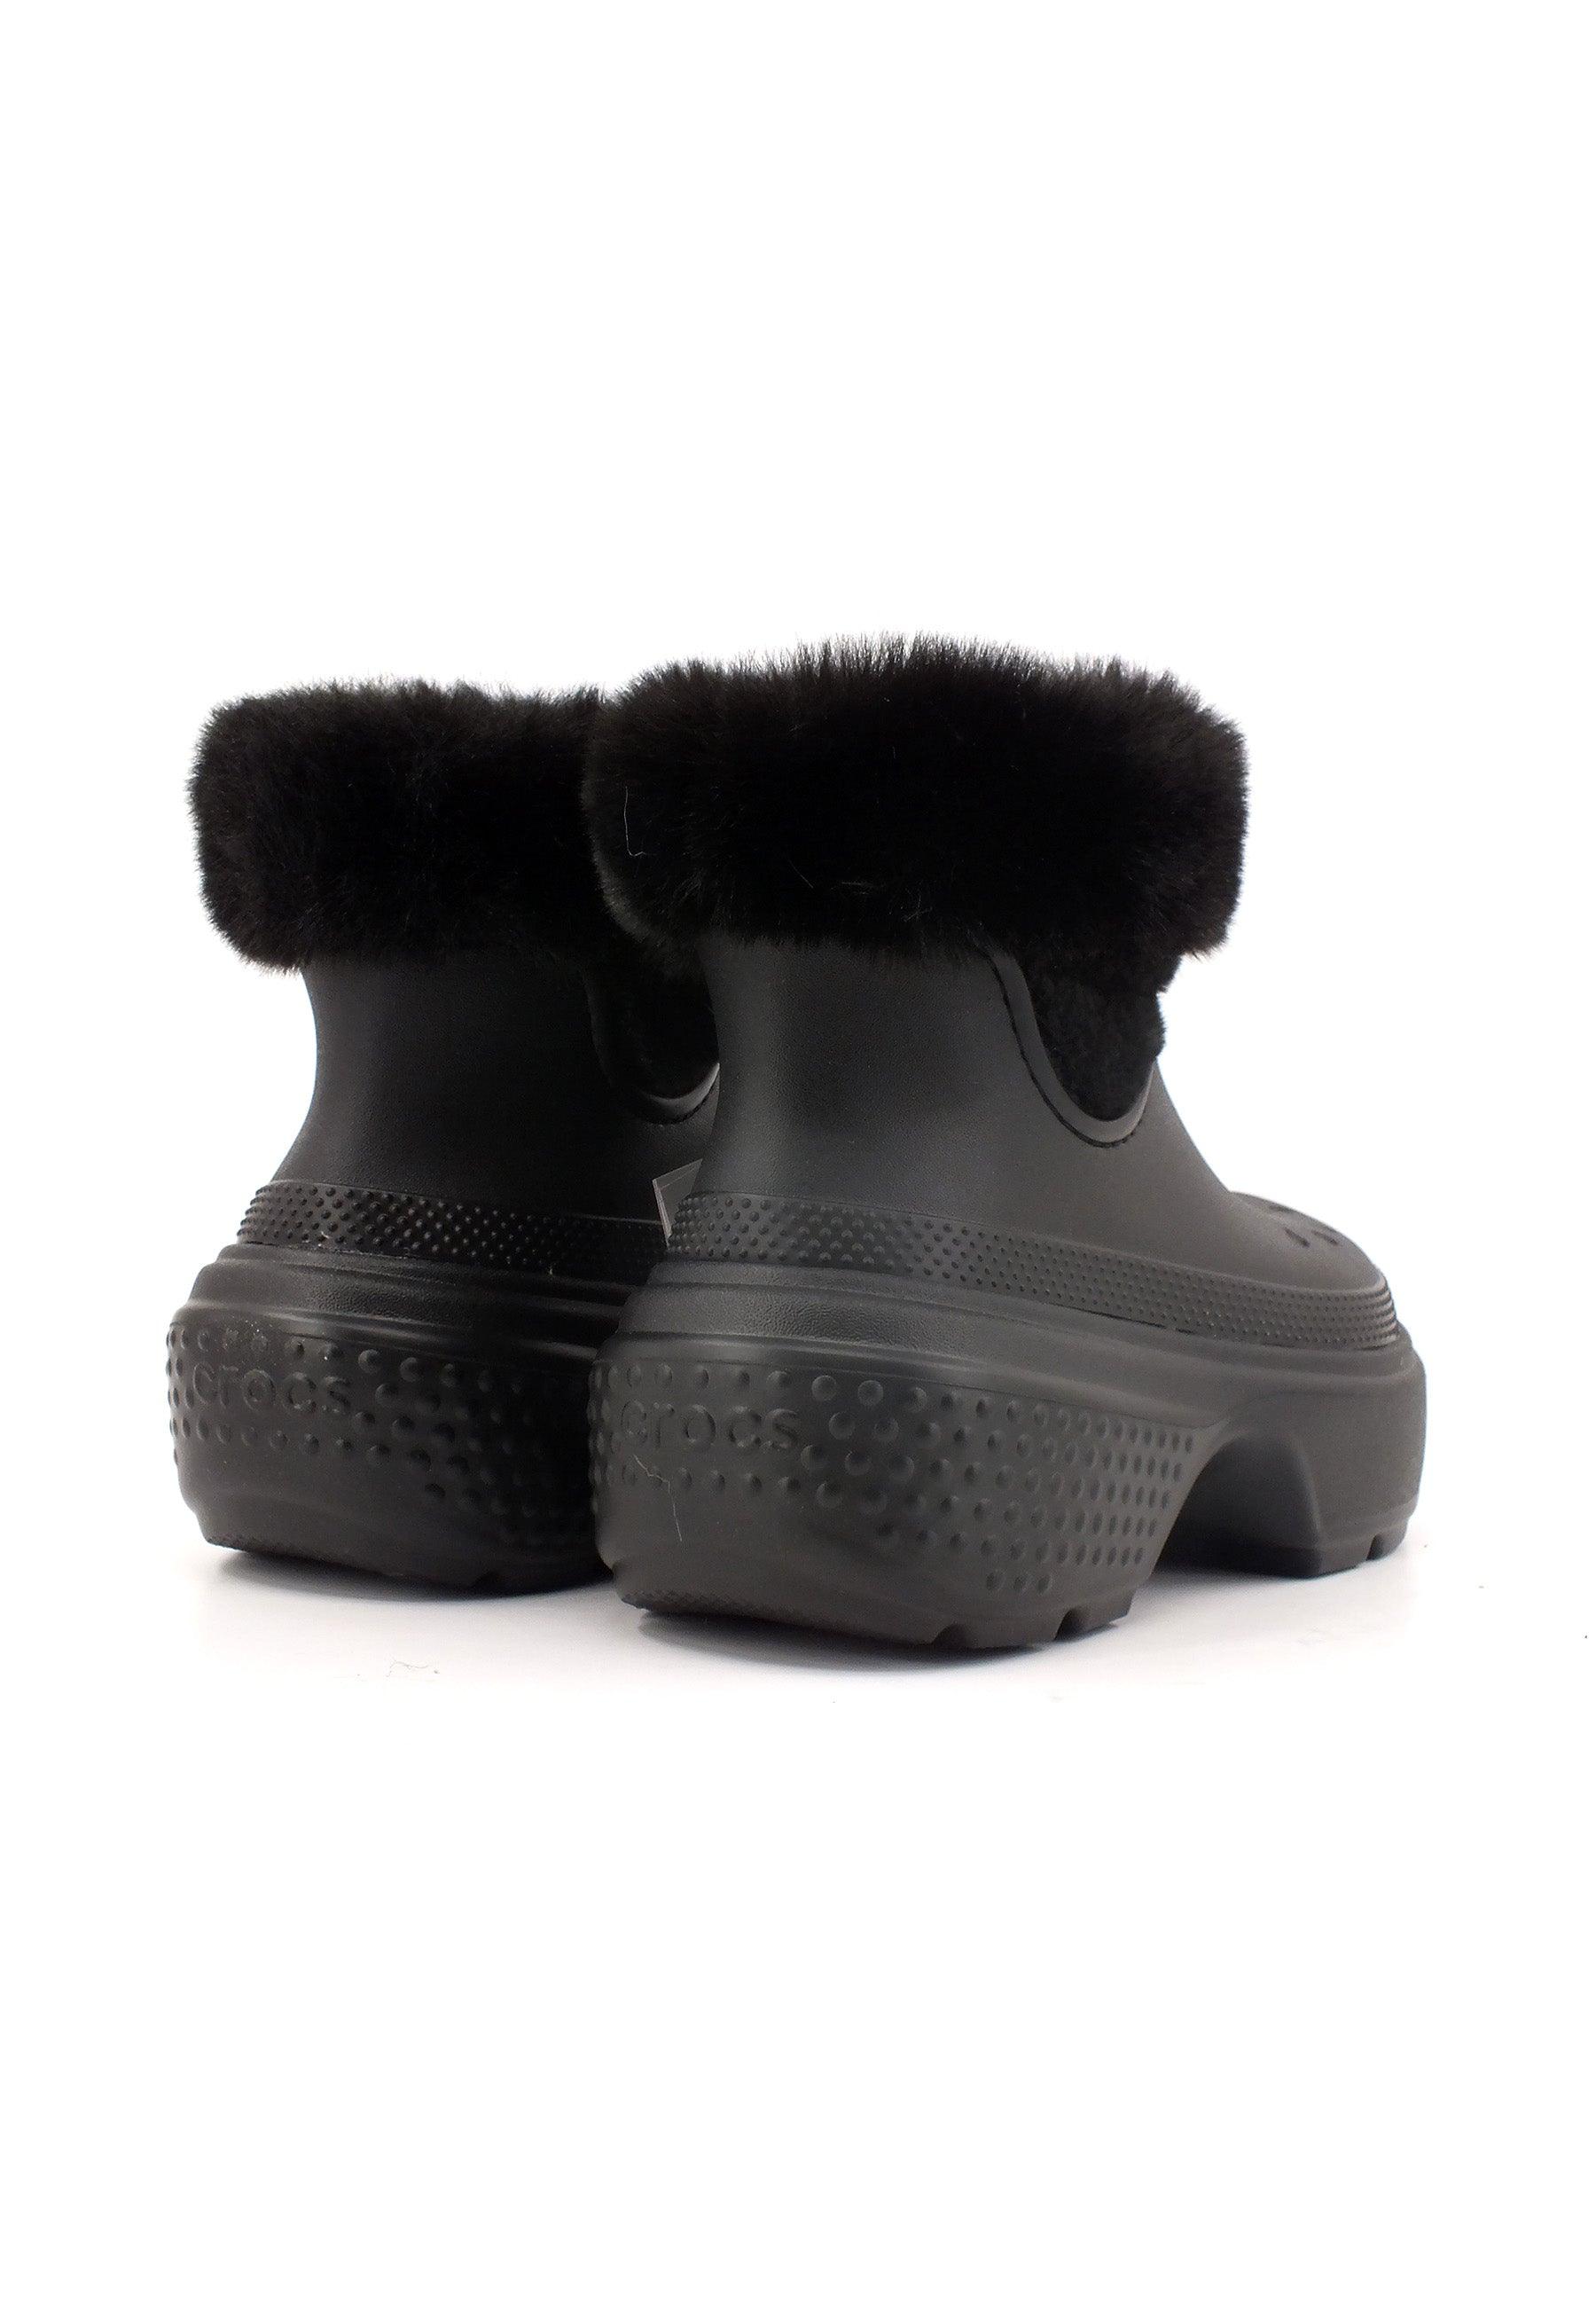 CROCS Stomp Lined Boot Stivaletto Pelo Donna Black 208718-001 - Sandrini Calzature e Abbigliamento